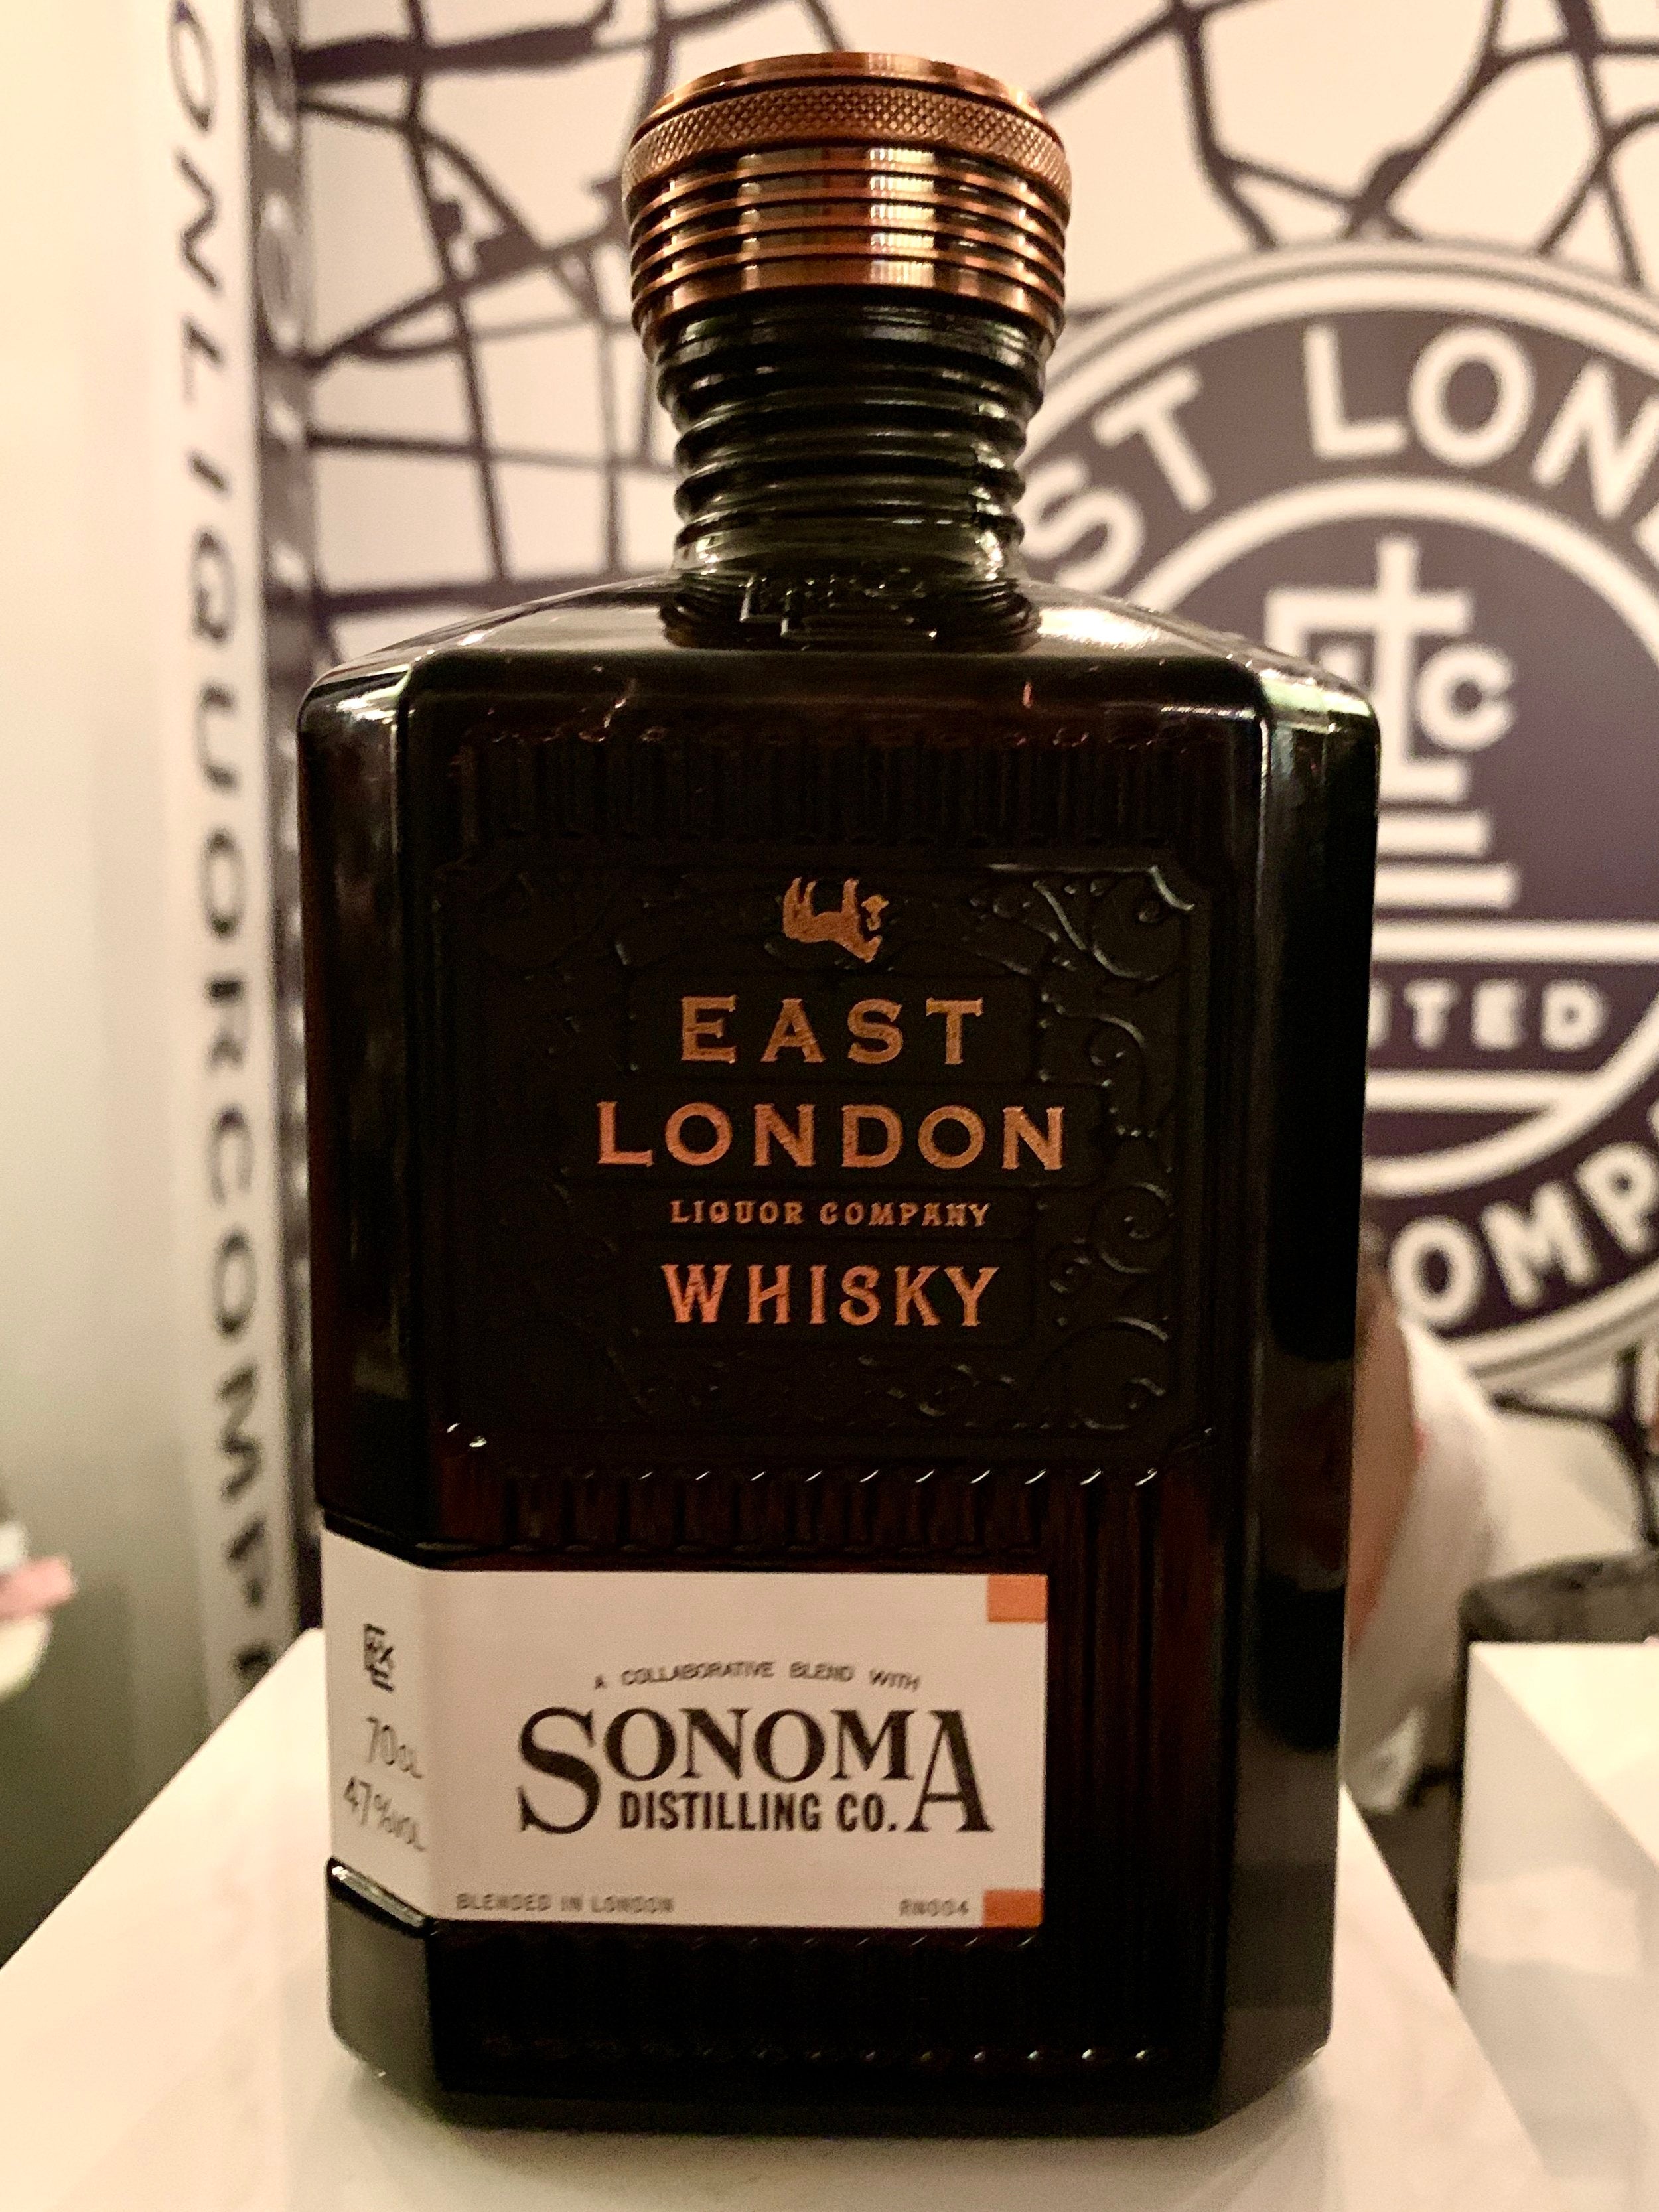 Three whiskies by East London Liquor Company